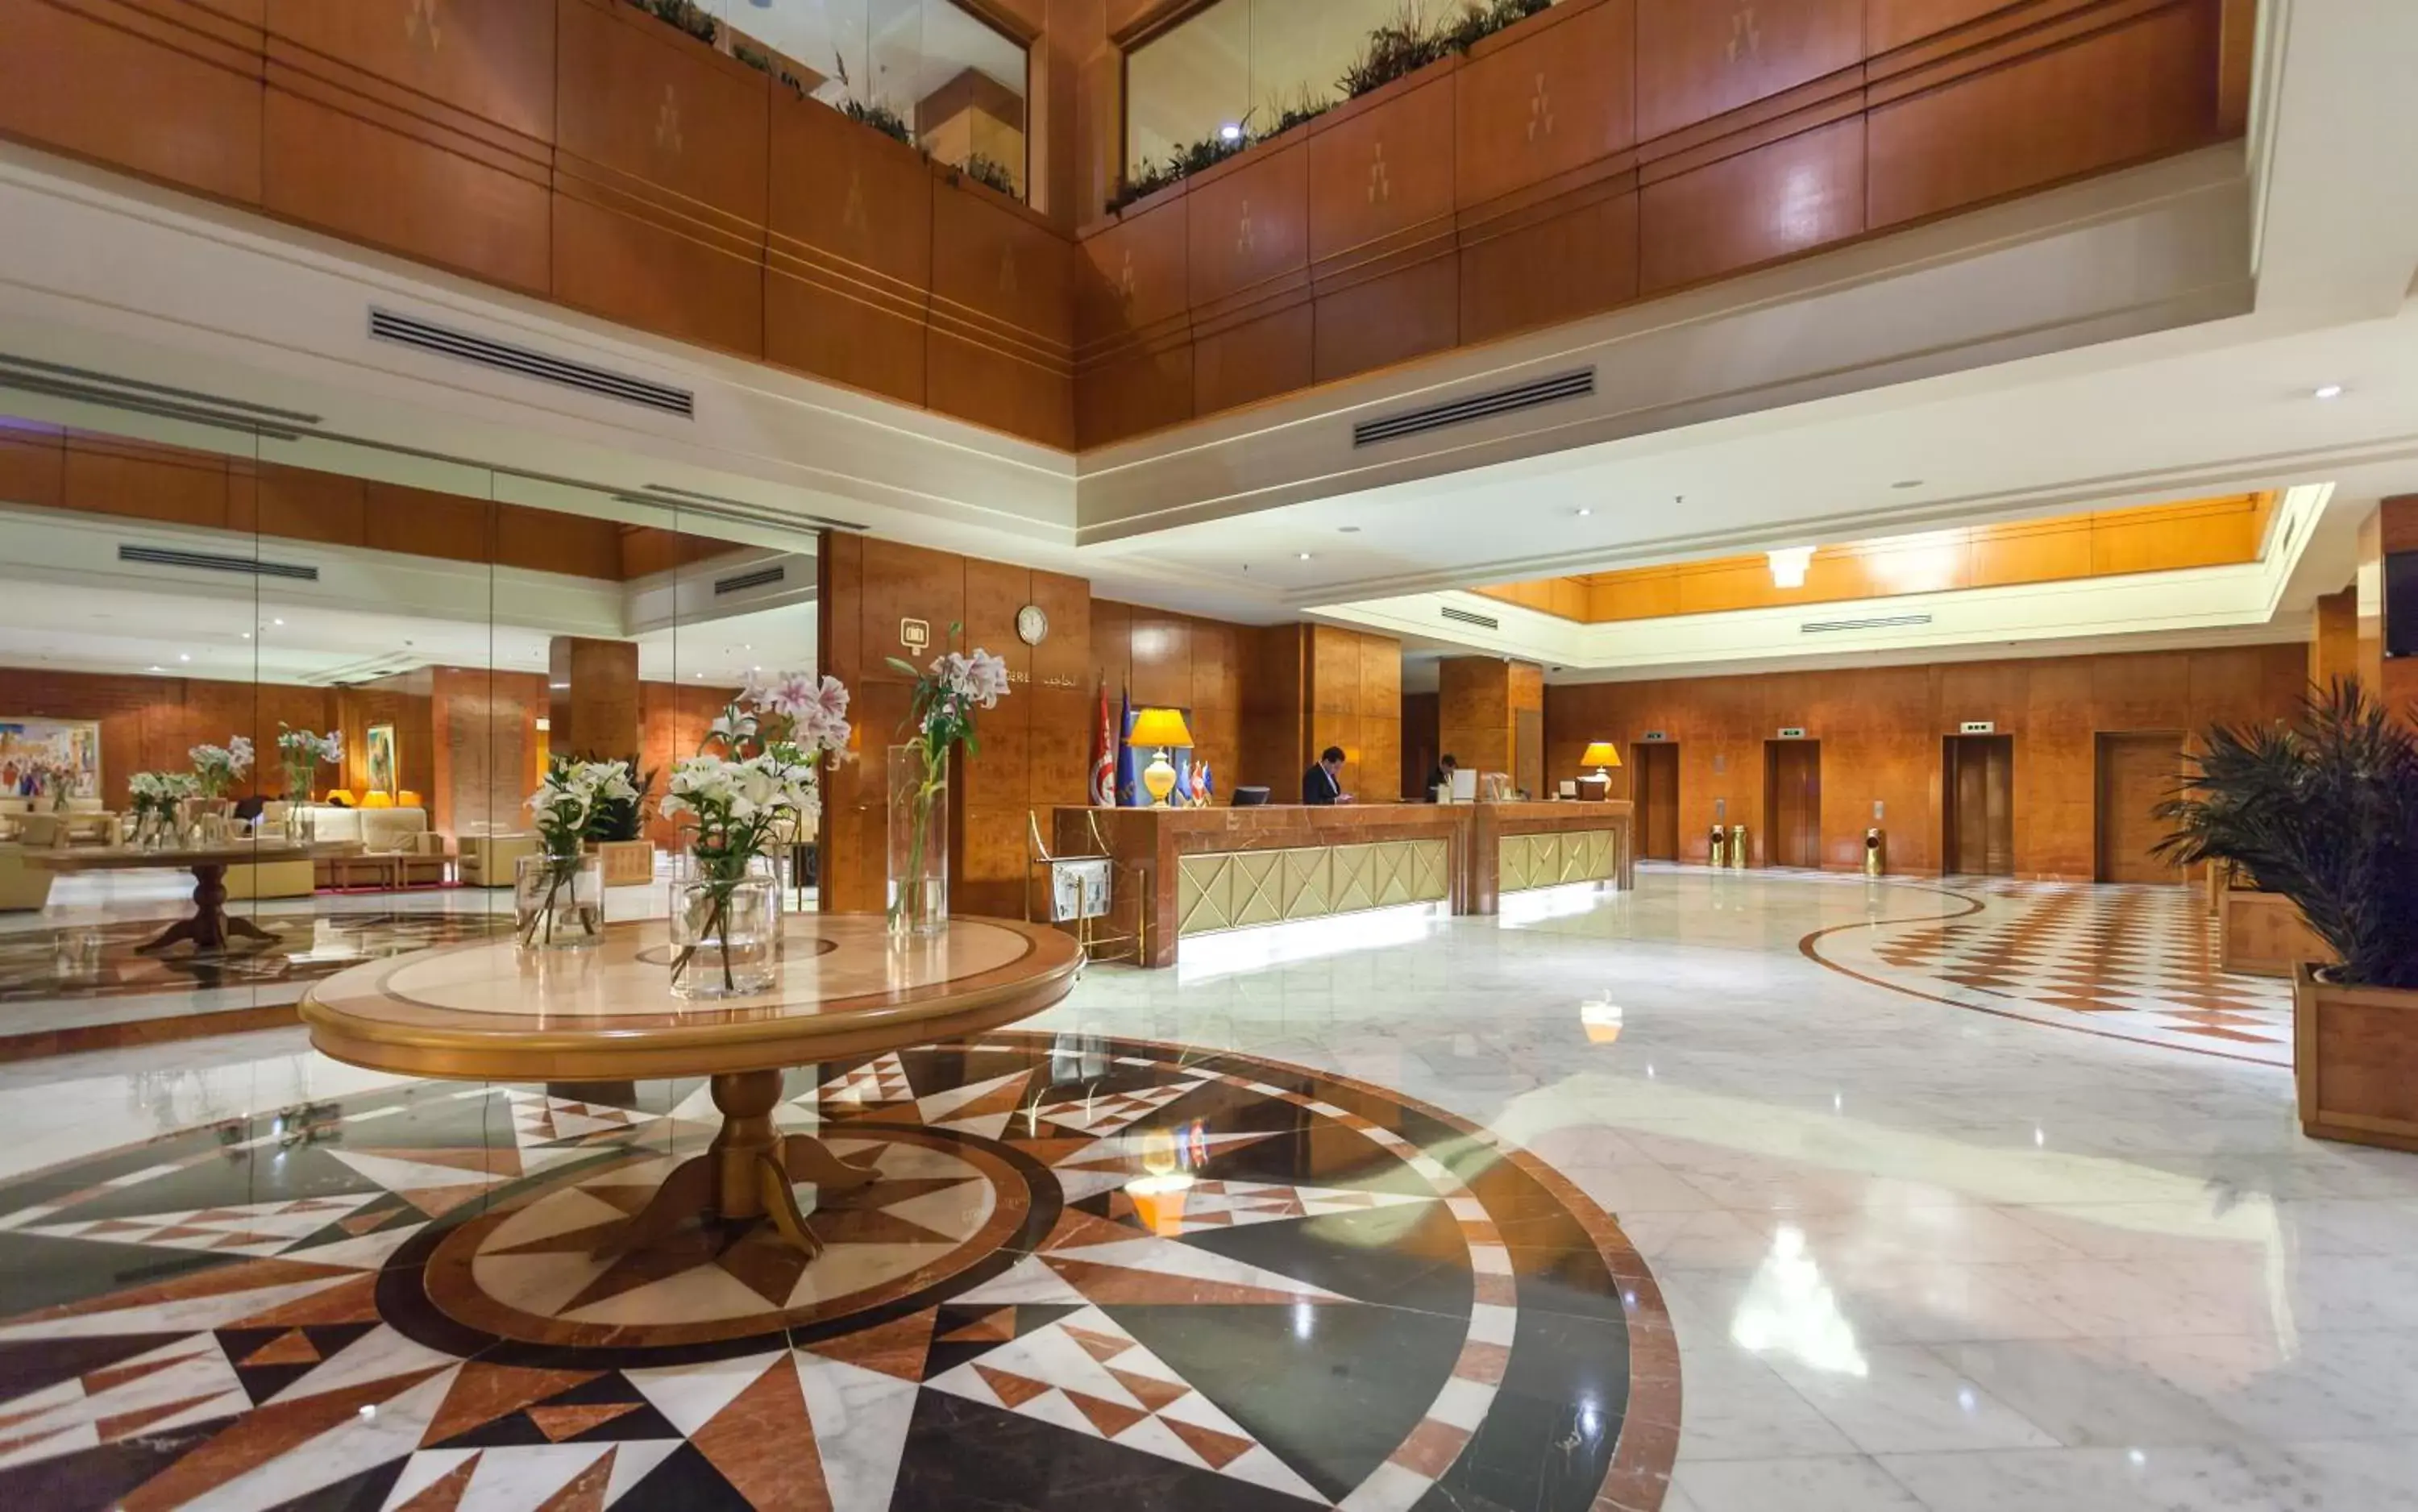 Lobby or reception, Lobby/Reception in El Mouradi Hotel Africa Tunis